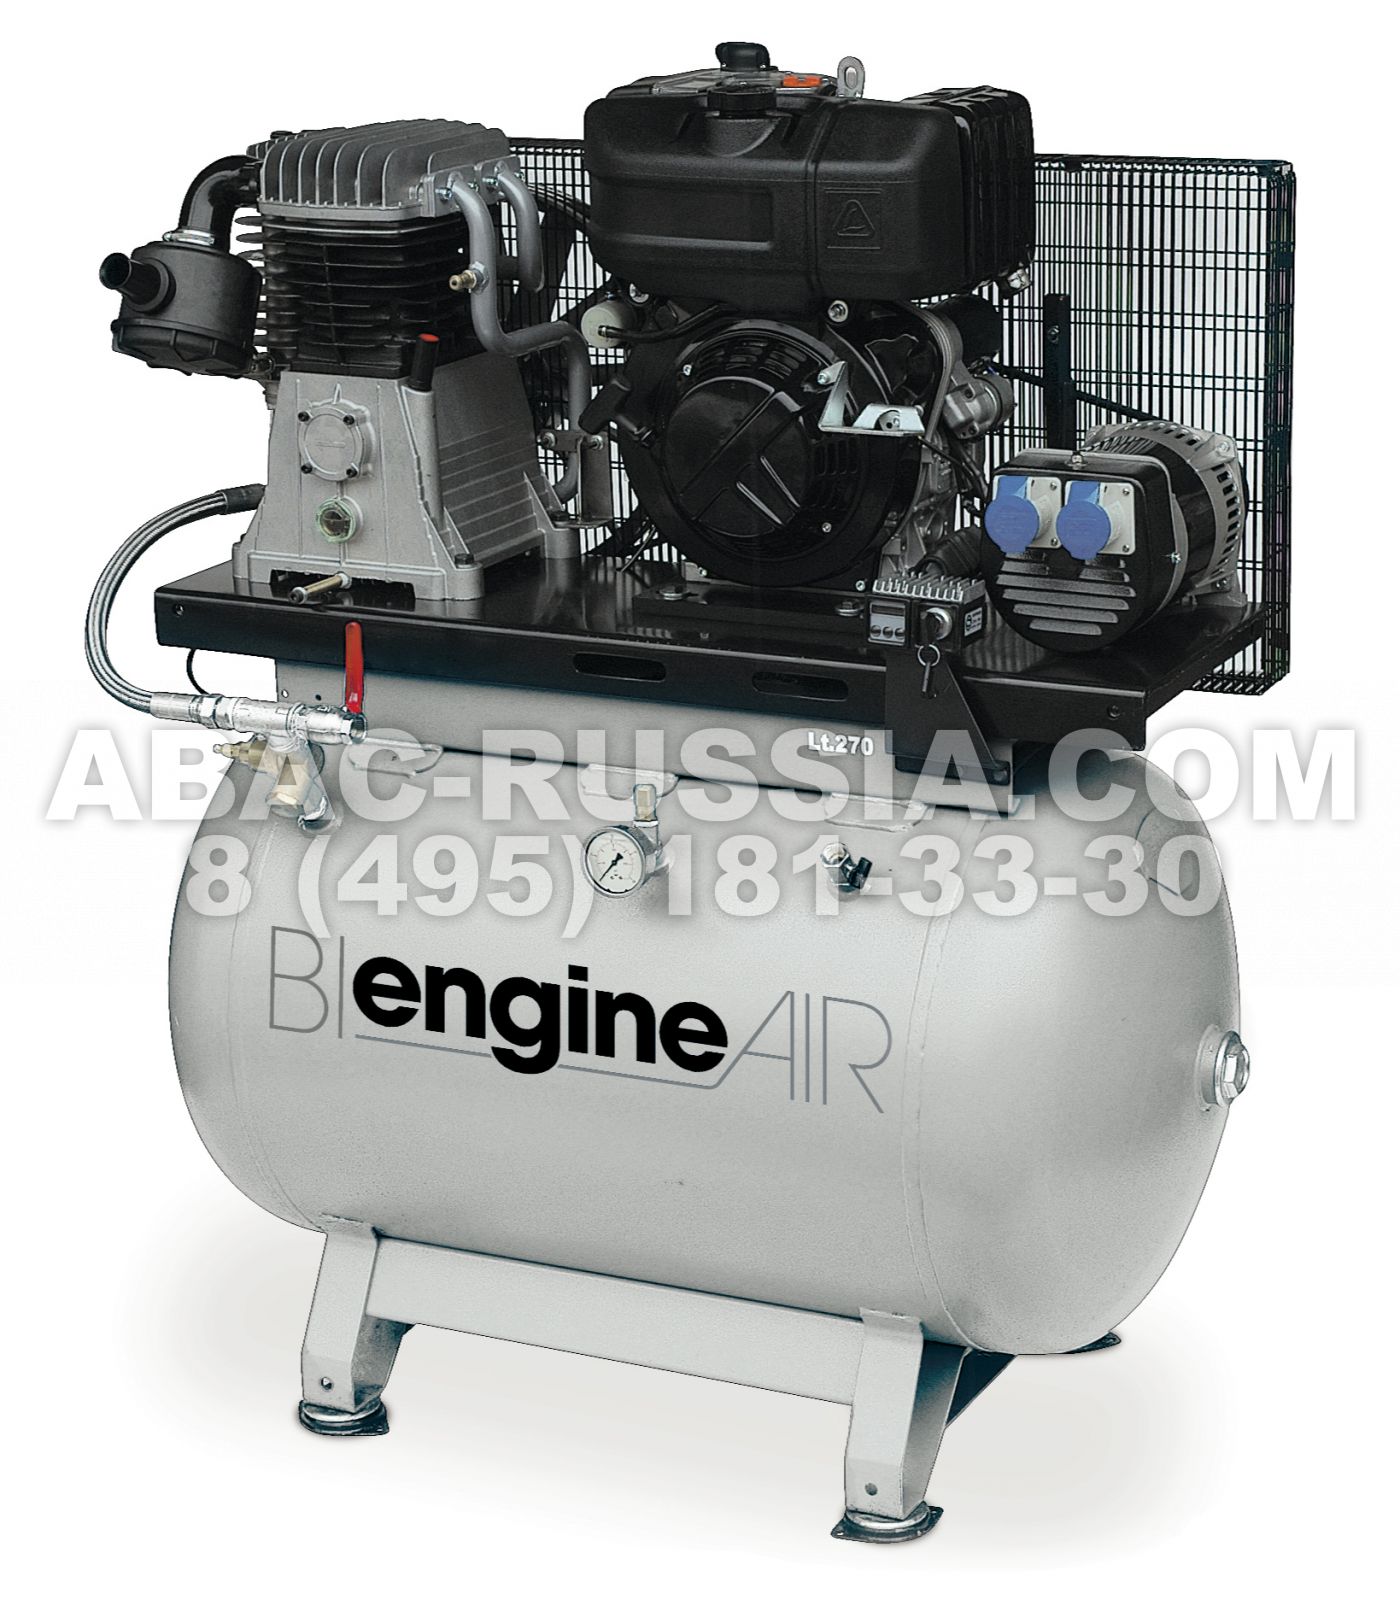 Поршневой компрессор AARIAC BI EngineAIR 8/270 Diesel 2.2 KvA